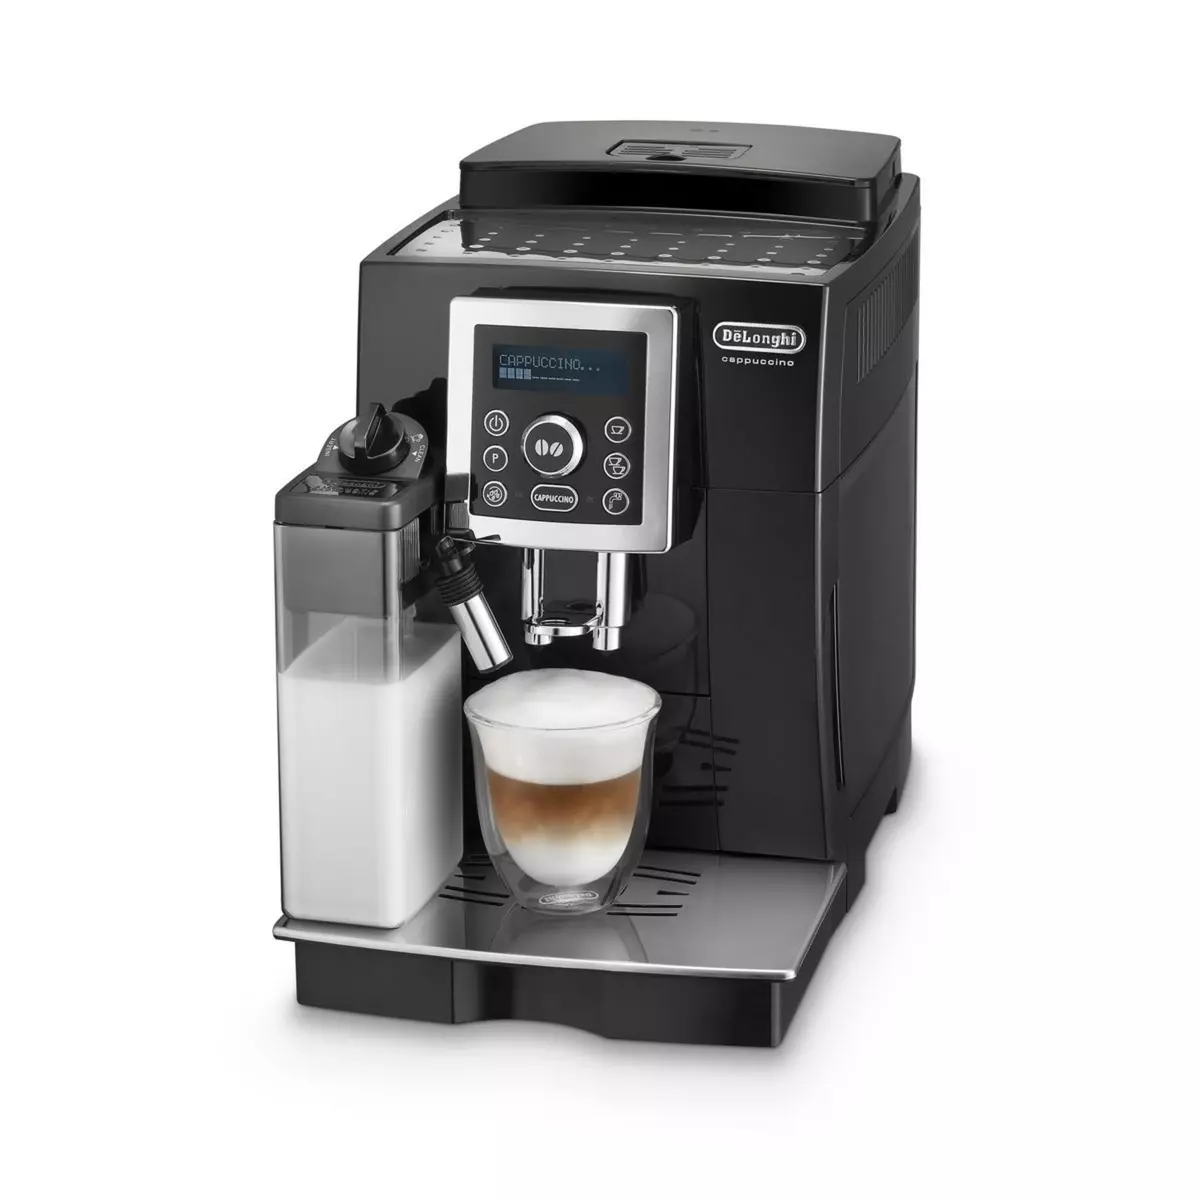 DELONGHI Machine à café expresso avec broyeur ECAM23460B - Noir pas cher 